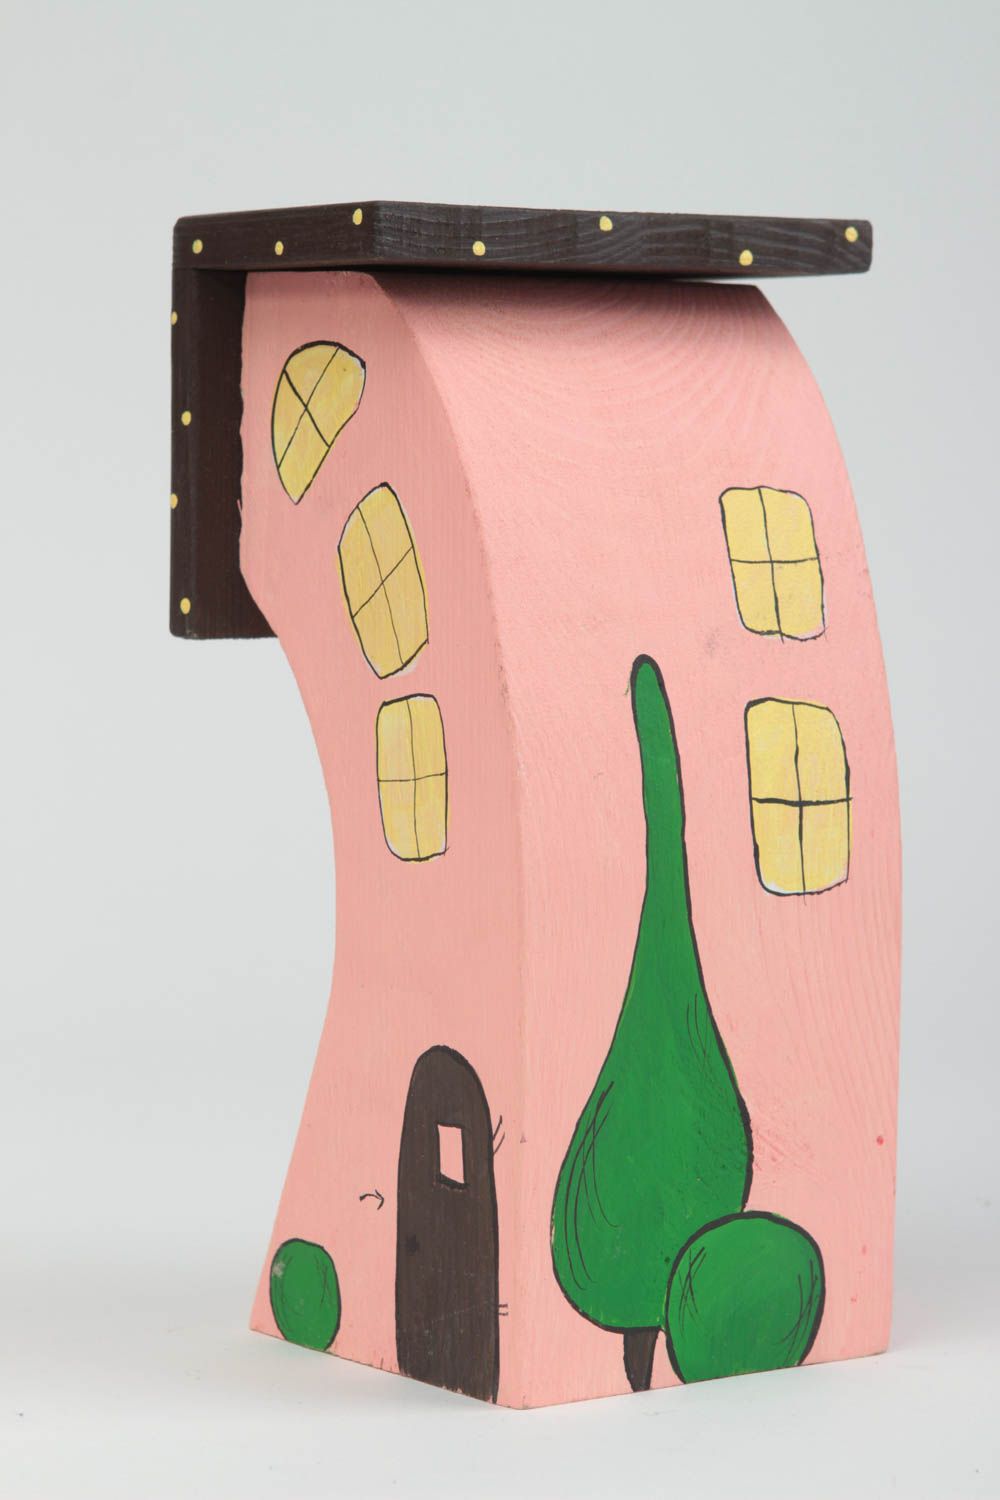 Хорошенький декоративный домик расписанный акриловыми красками ручная работа фото 2